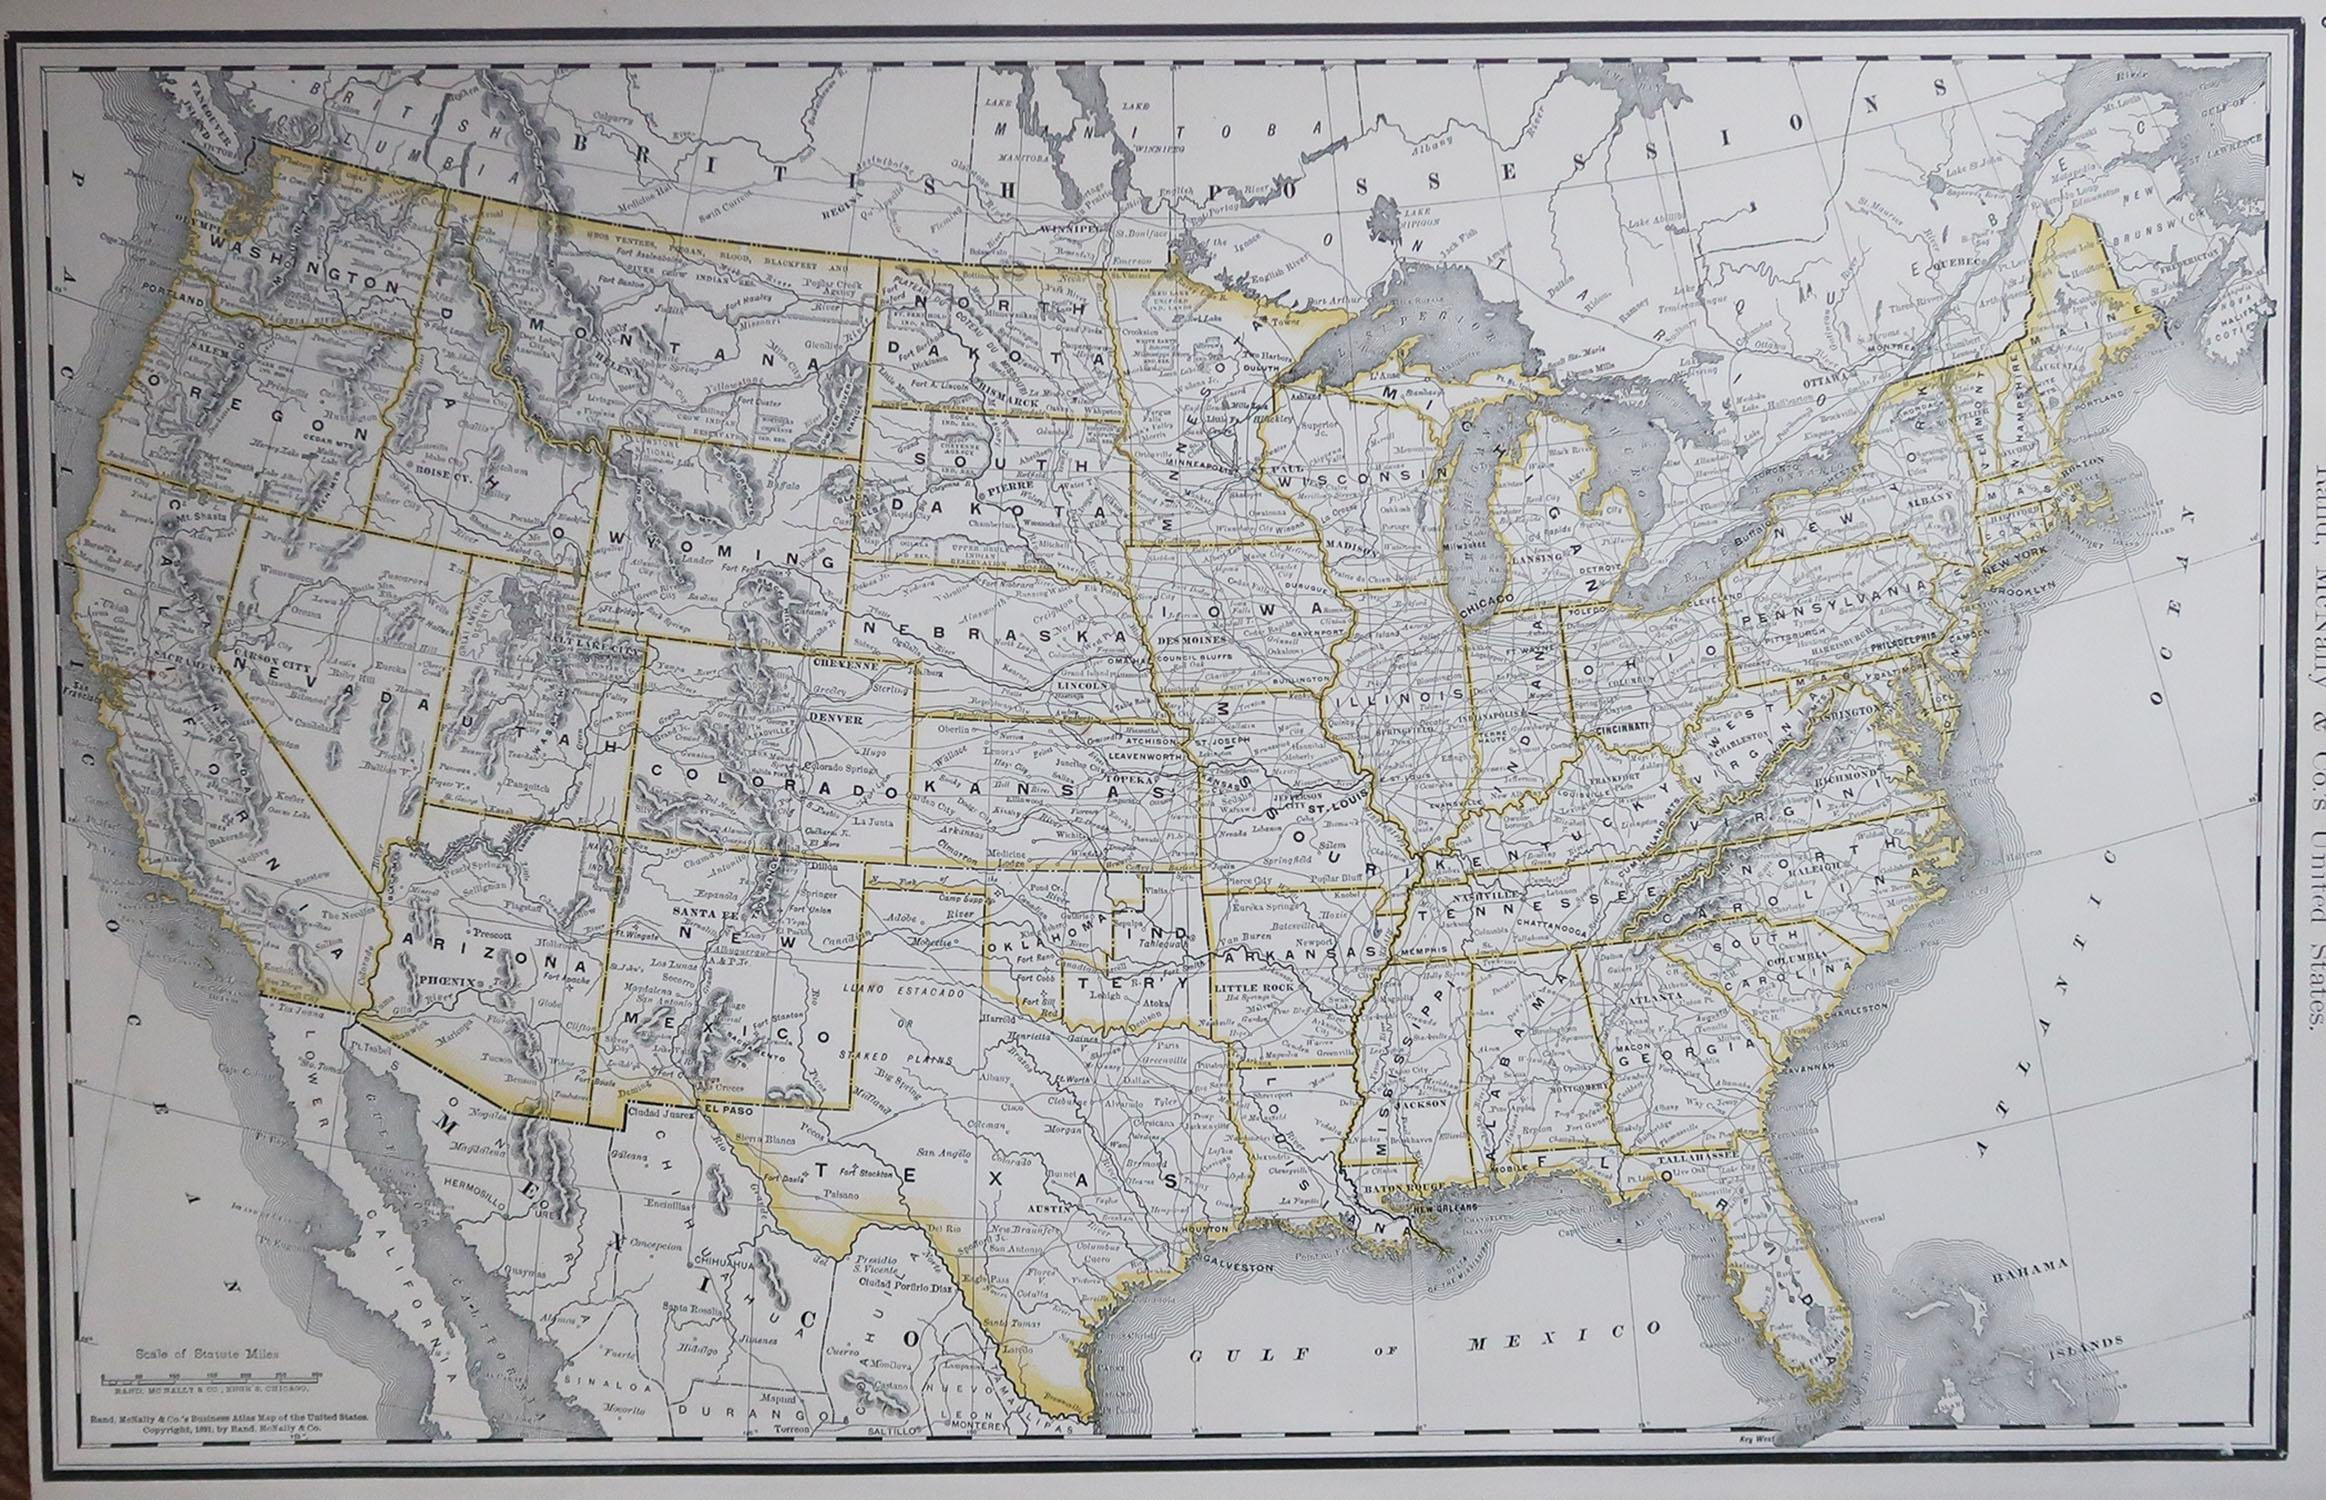 Fabuleuse carte des États-Unis

Couleur originale

Par Rand, McNally & Co.

Daté de 1891

Non encadré

Livraison gratuite.